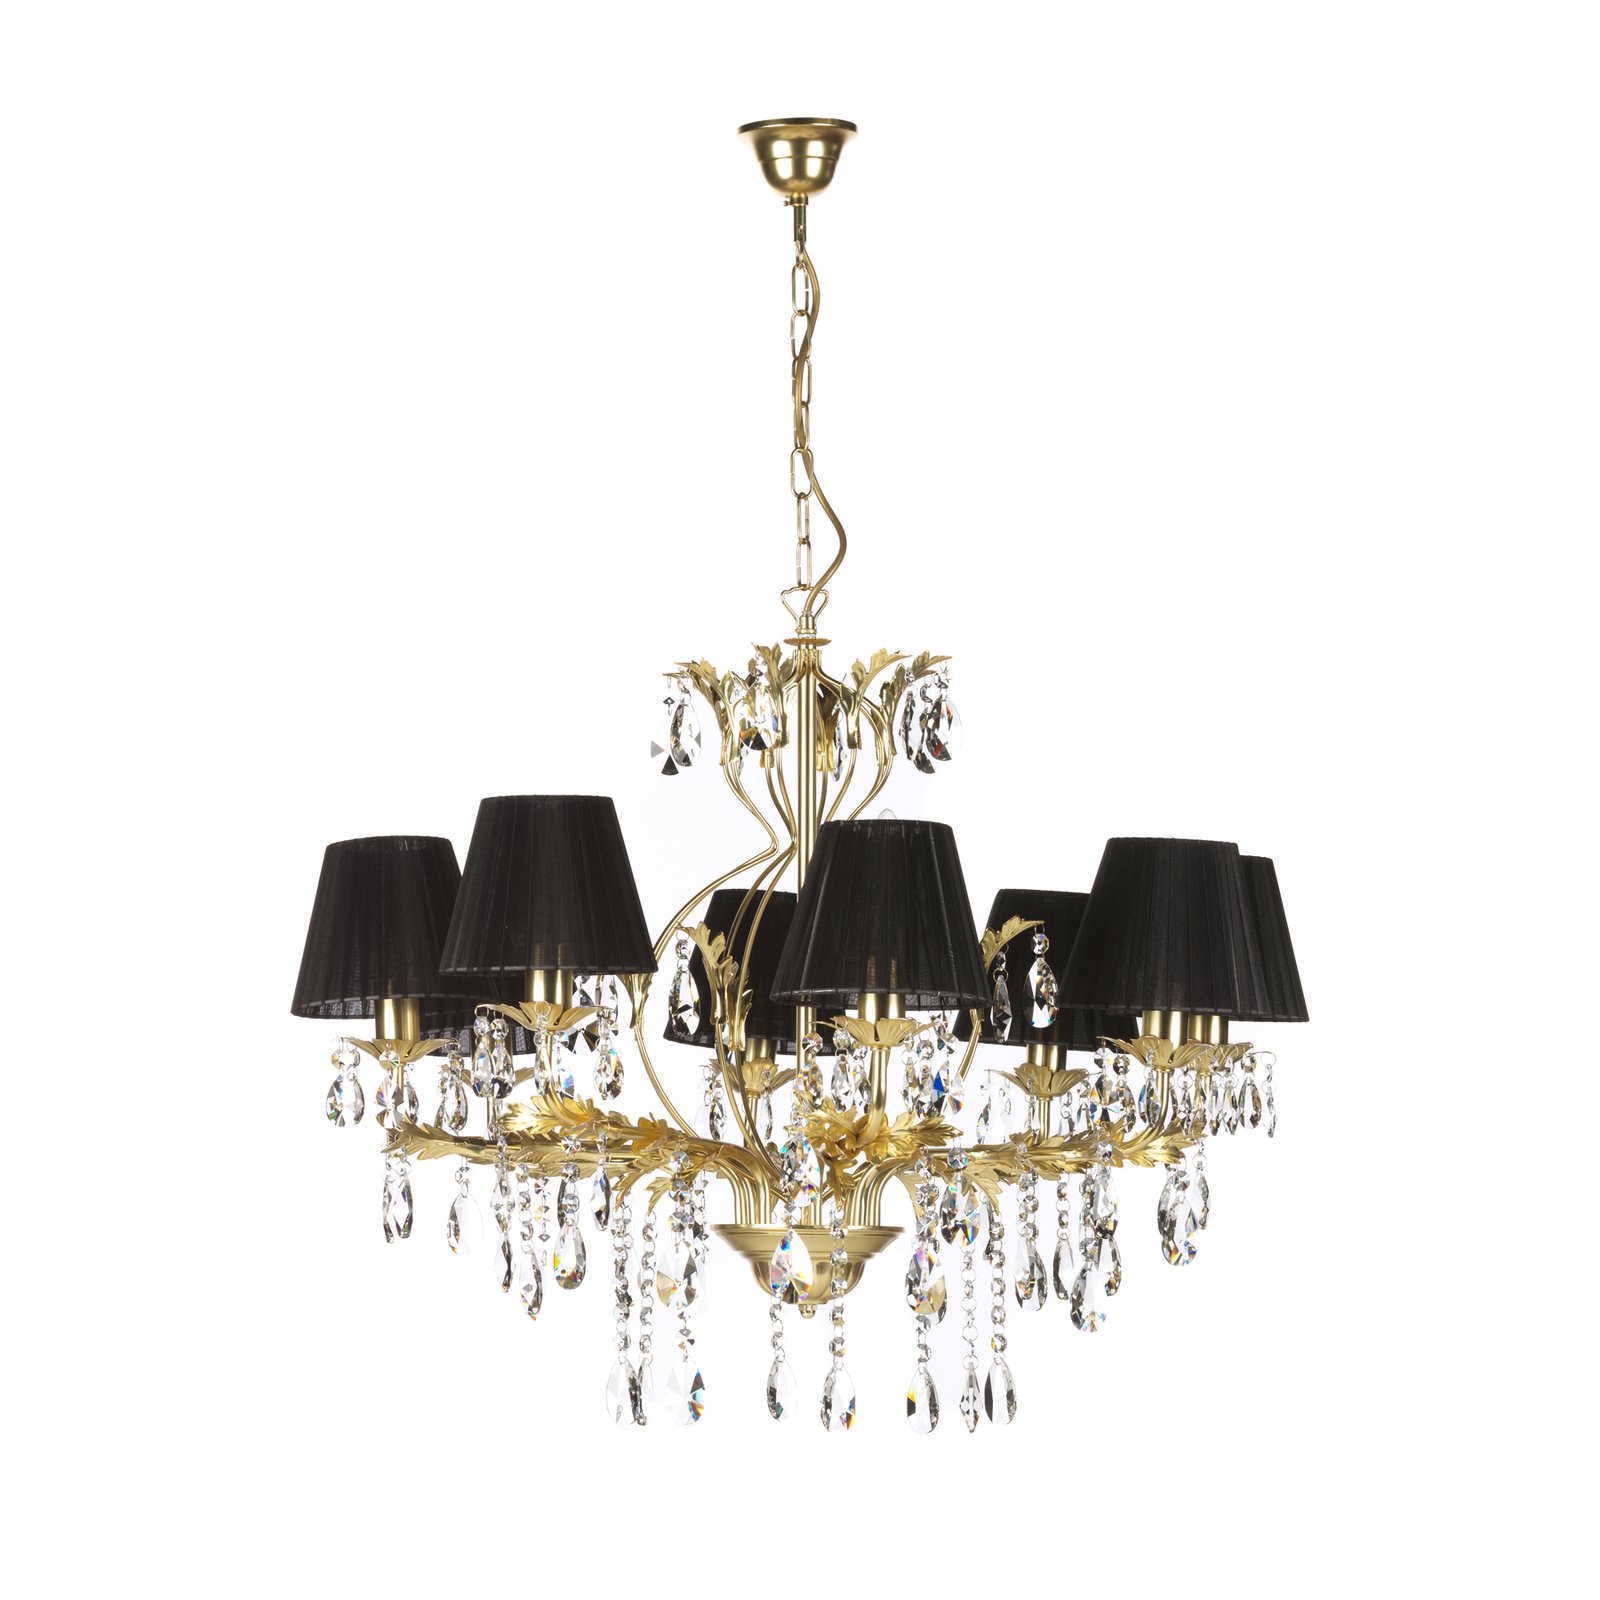 Karen chandelier eight-bulb gold/black